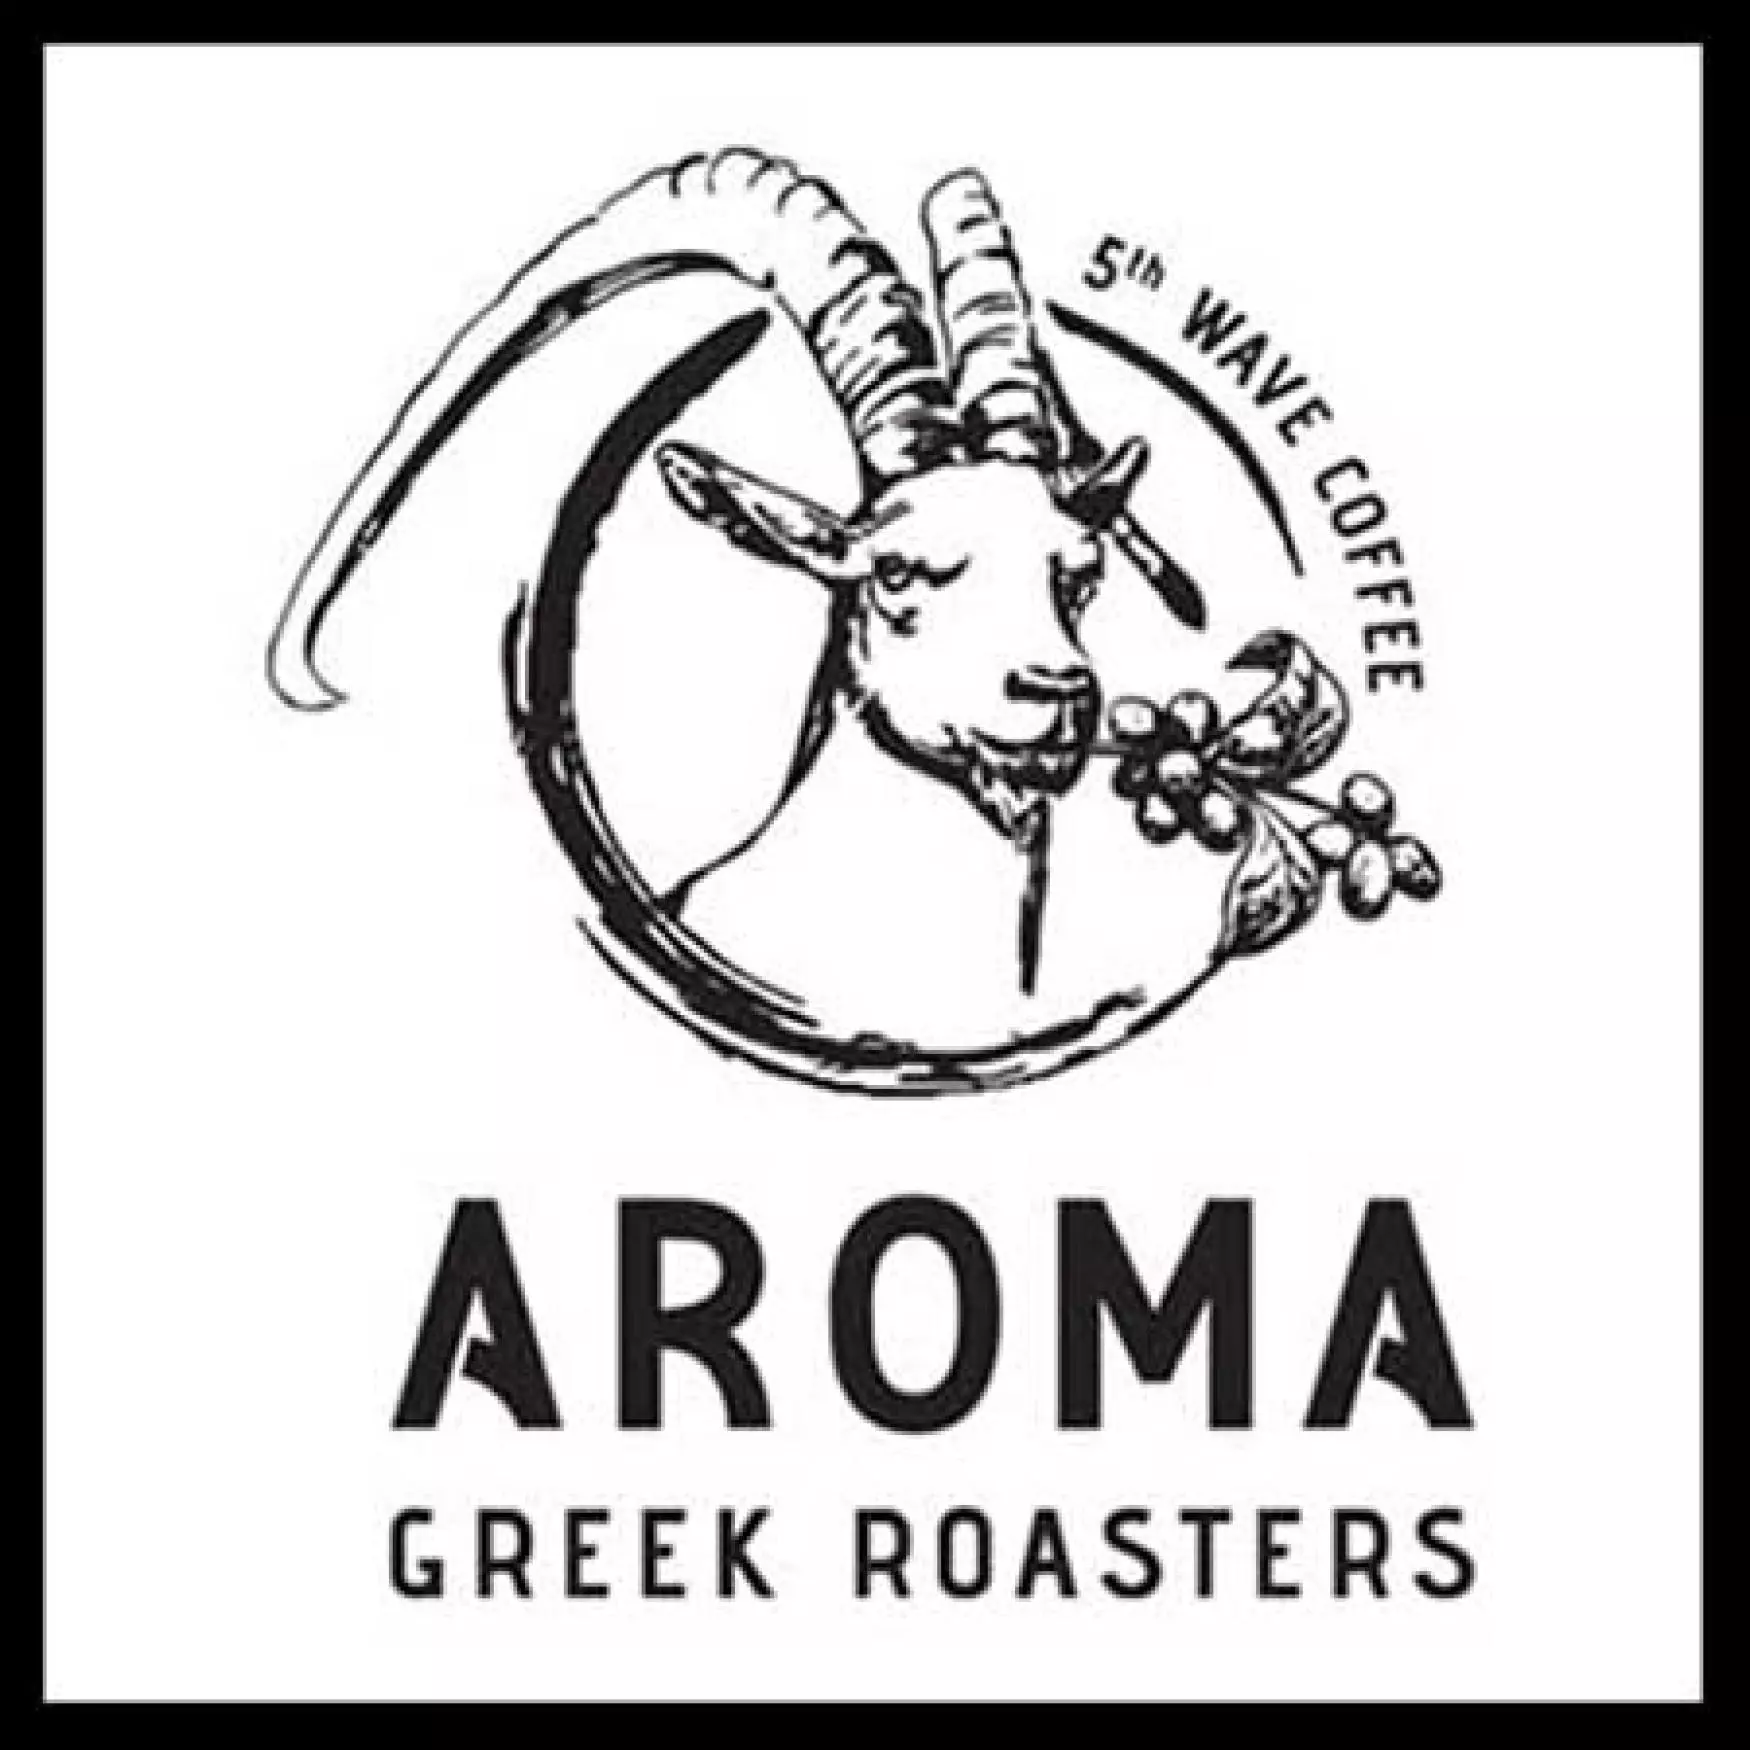 AROMA GREEK ROASTERS